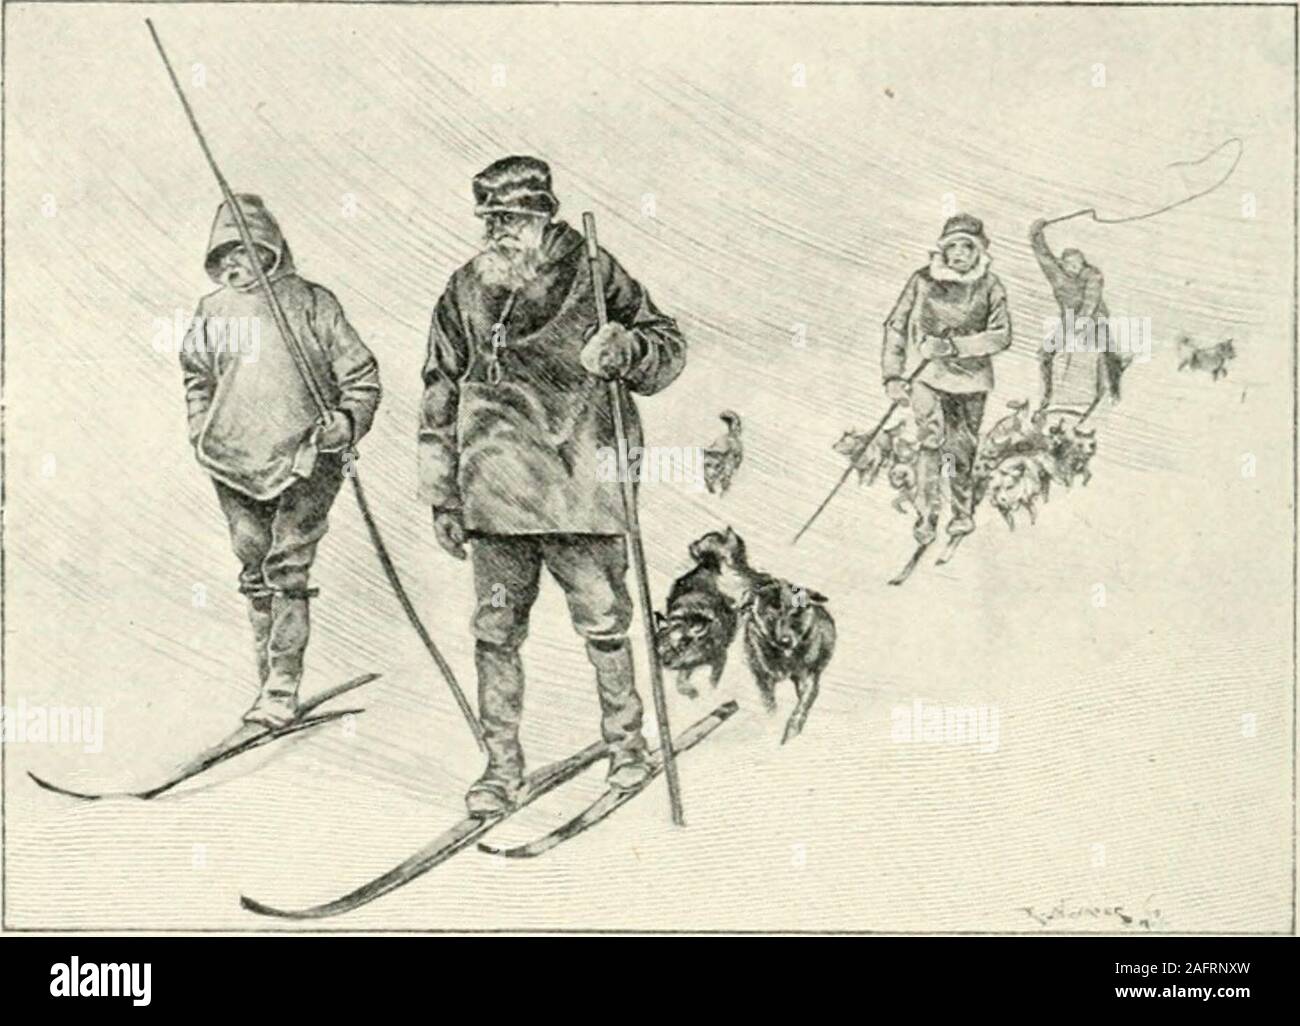 . Nansen avec dans le Nord ; un enregistrement de l'expédition Fram en 1893-96. ld n'a pas de dommage effectupon-nous digne de ce nom, mais nous a eu, bien entendu, être prudent. Peder avait sa joue à l'abri du gel, bien que hadone hiiten Bentsen du côté de son nez gelés tous les jours. Il thoughtthat partie de il apparaîtrait très noir quand hegot retour au sud. Scott-IIansen hadhis souvent gelés persiste lors de la prise d'observations, d'Andon une occasion, lorsque m'a été Nansen photographier,m- non.se tout d'un coup devenu blanc sans mybeing au courant. Nansen avait à me dire d'makehaste et frotter avec de la neige. O Banque D'Images